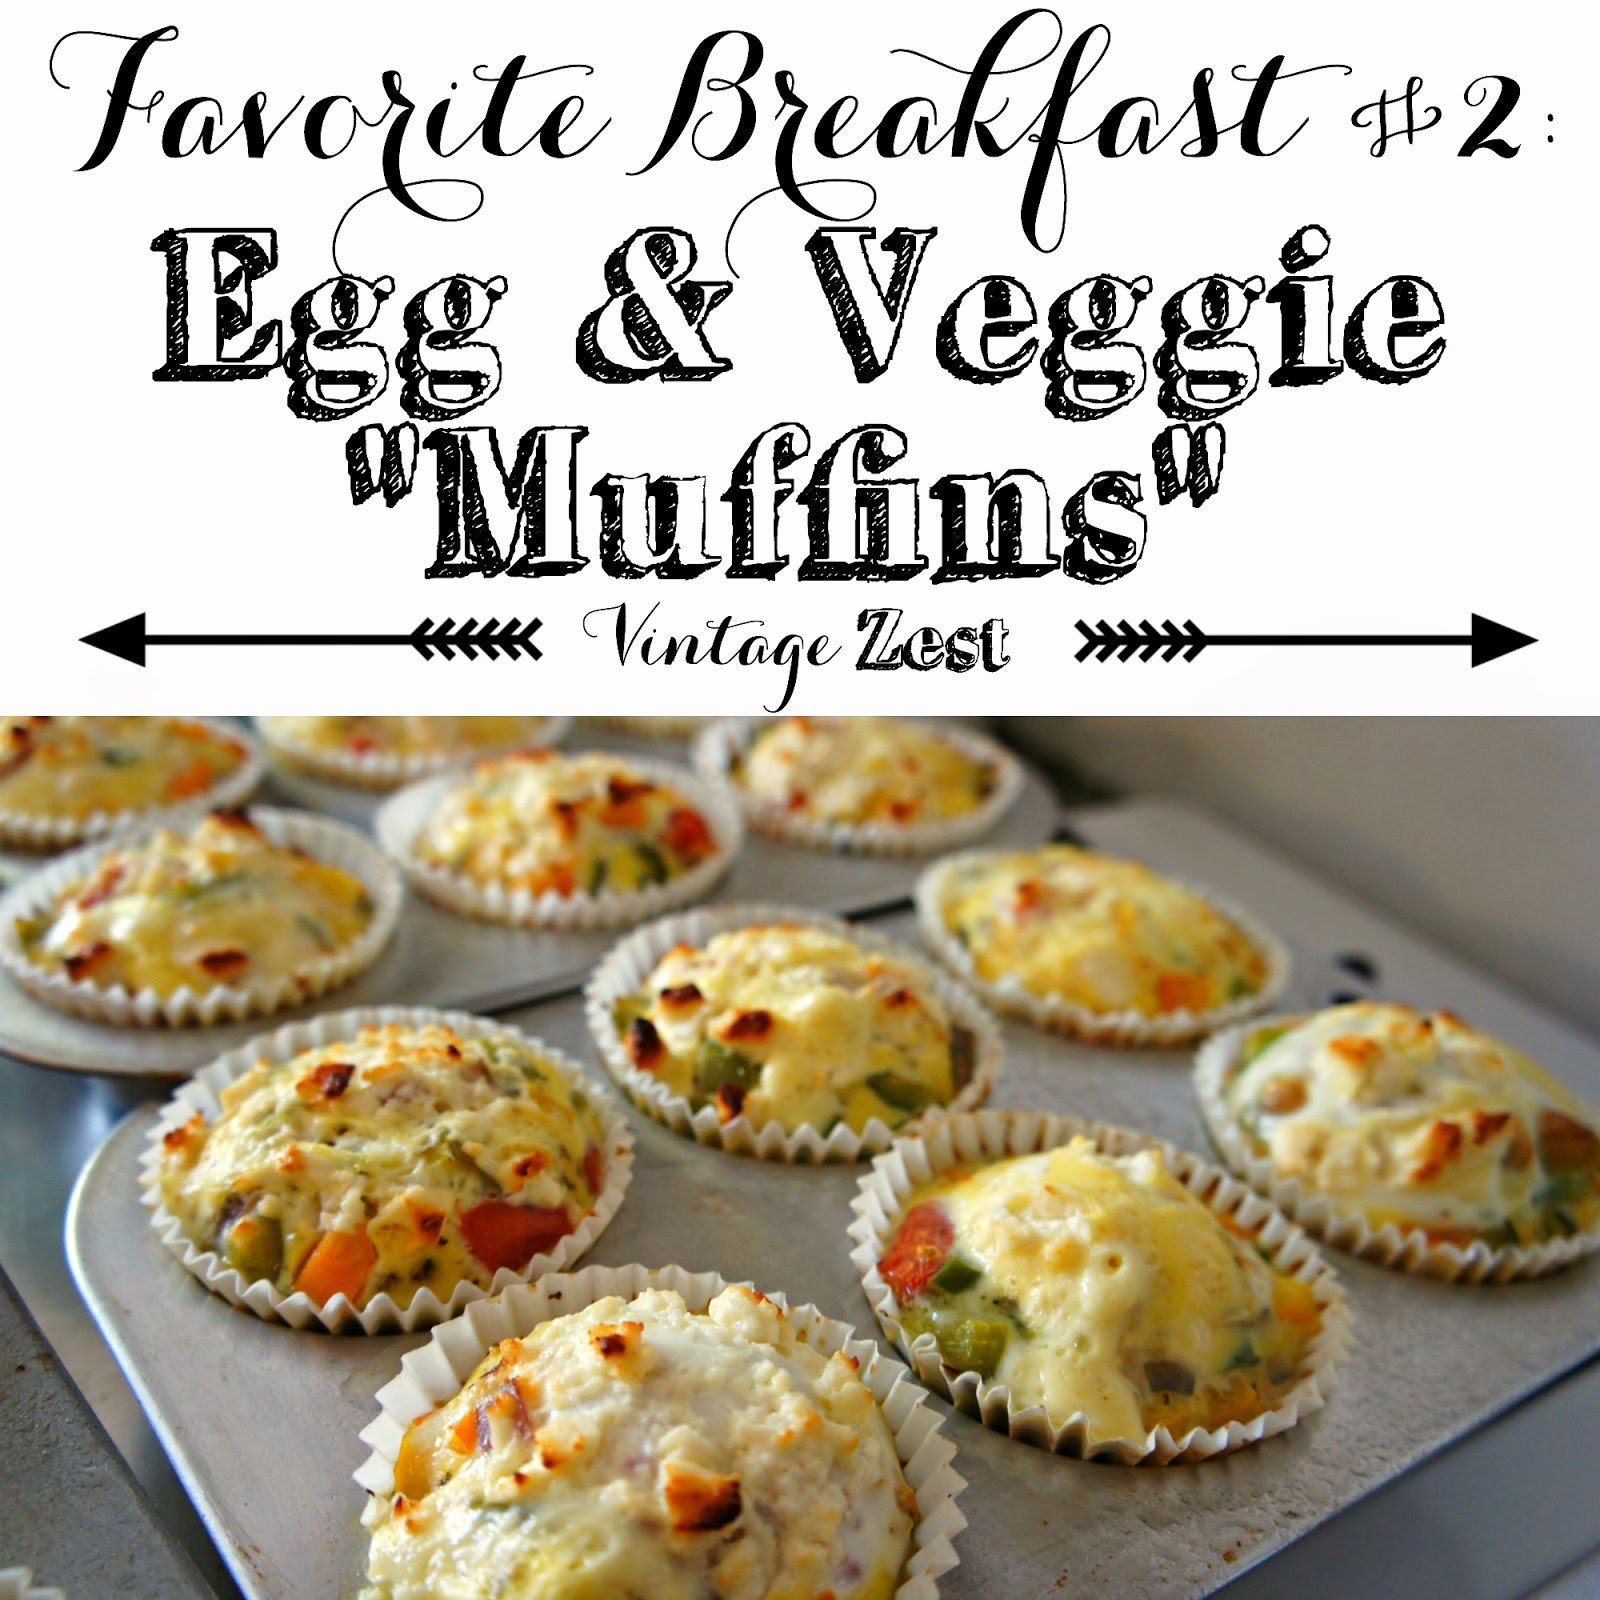 Easy Egg & Veggie Muffins 1